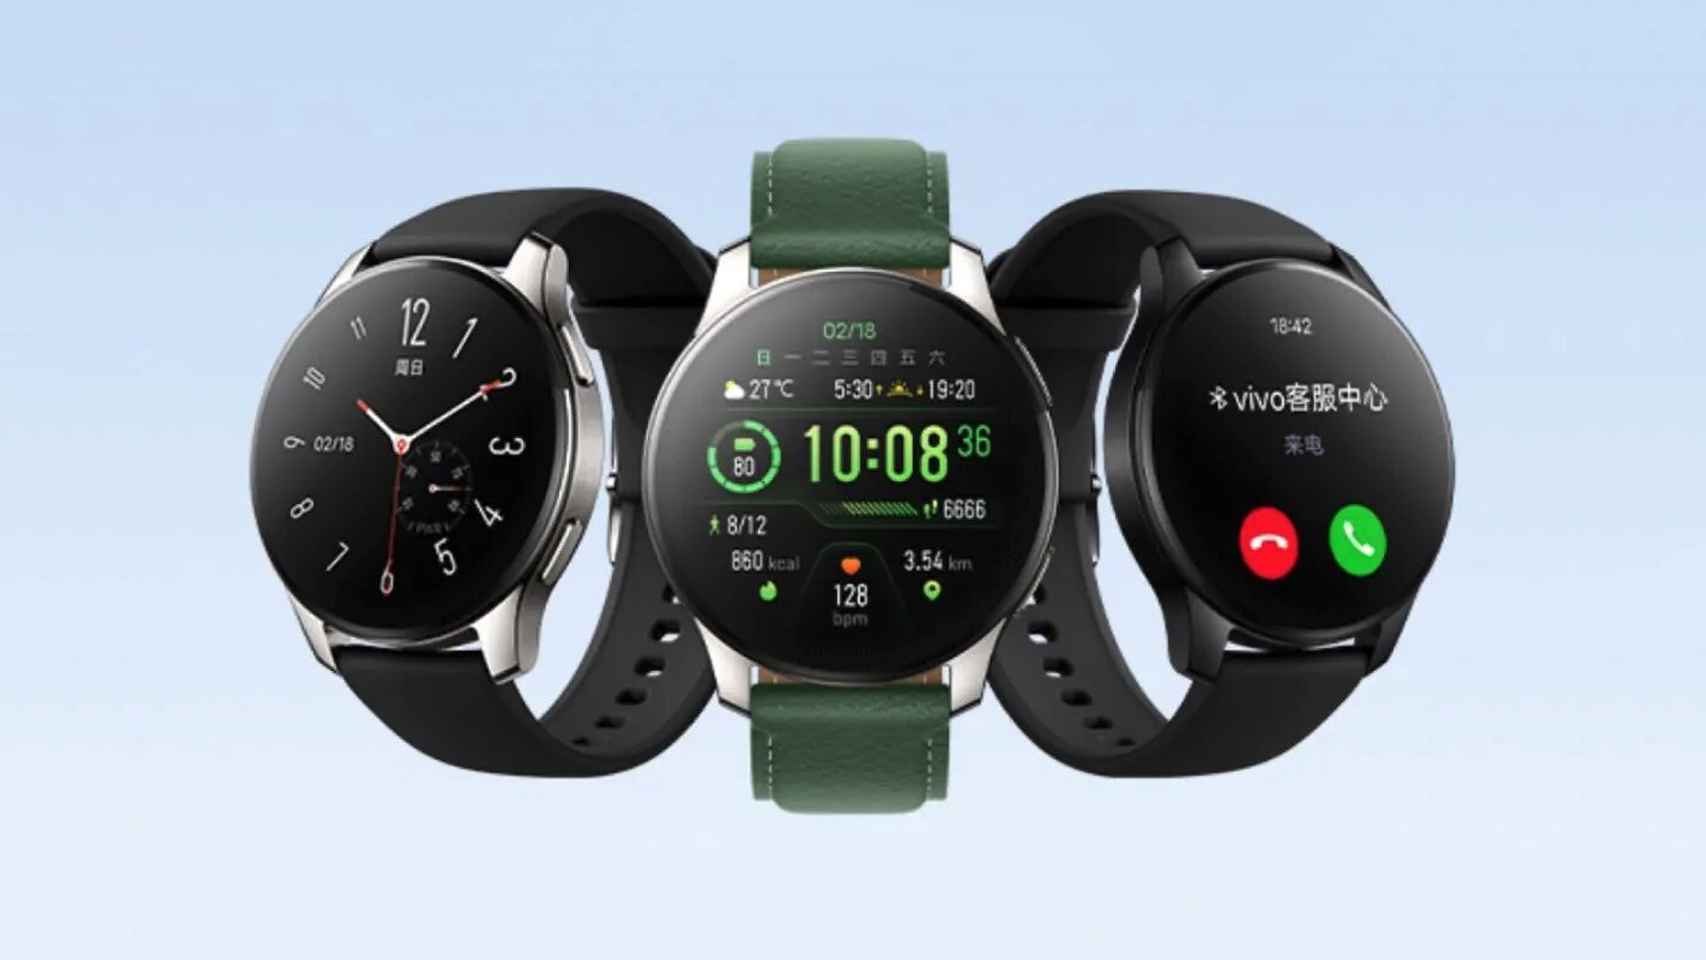 Viento fuerte Competencia Calígrafo Nuevo Vivo Watch 2: un reloj inteligente con NFC, esim y fabricado en acero